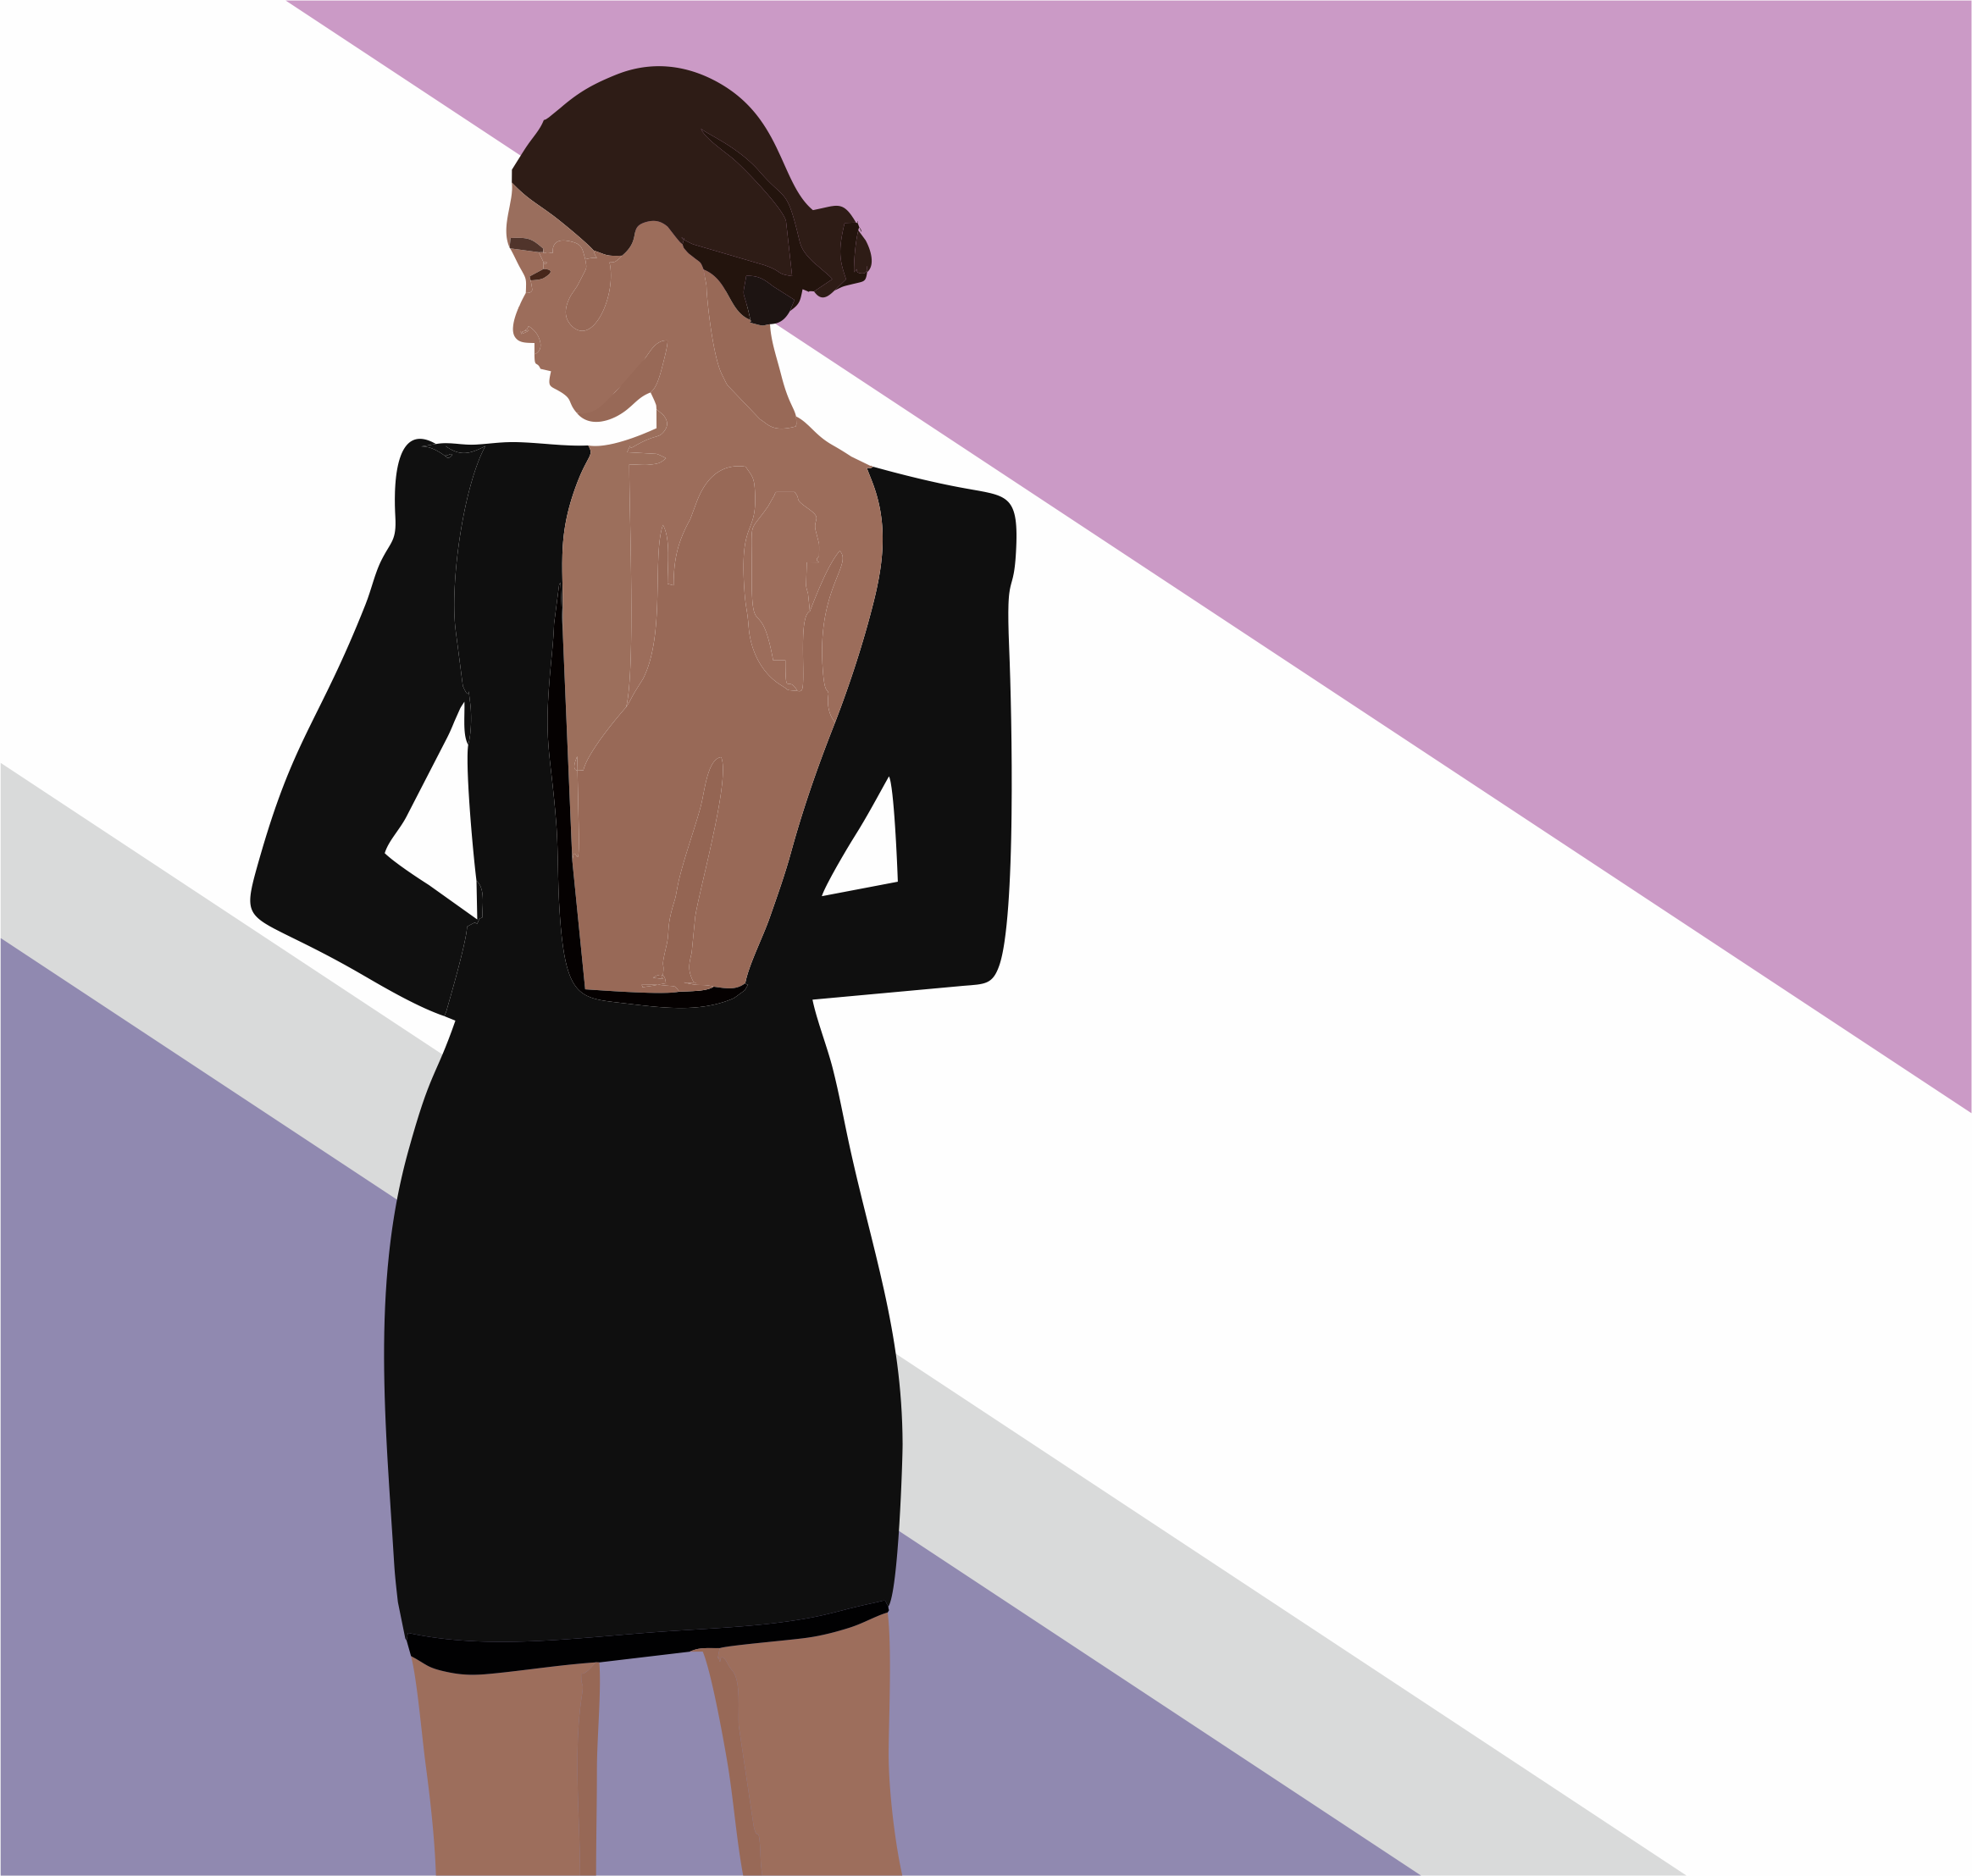 9% мужчин согласны с тем, что женщины в облегающих платьях футлярах выглядят сексуально. Дизайн © ООО "ПРО Бренд"